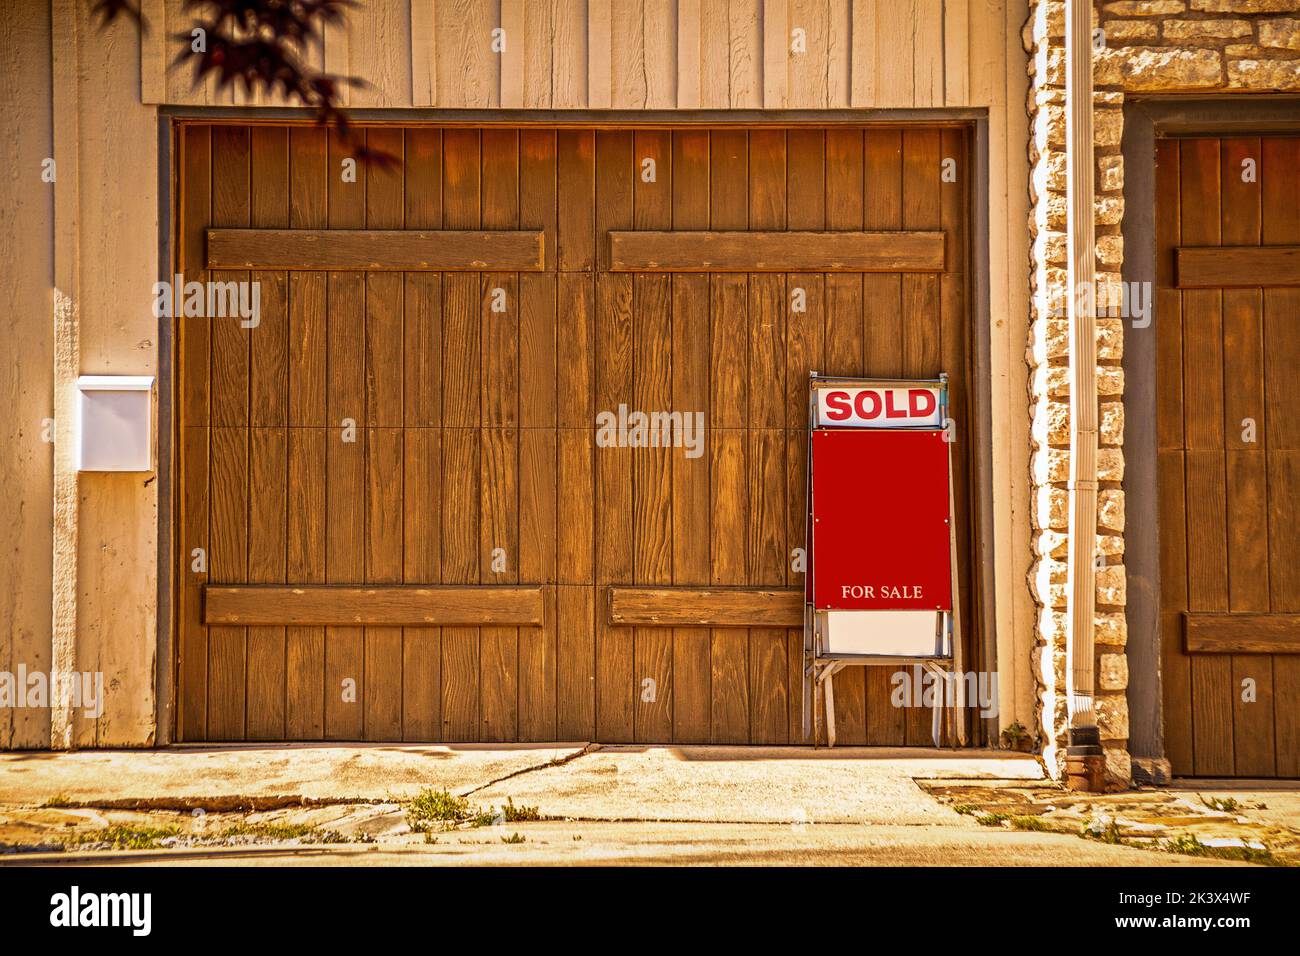 Garaje para dos coches con puertas rústicas de madera con signo de venta diciendo vendido apoyado contra él - Copy Space Foto de stock